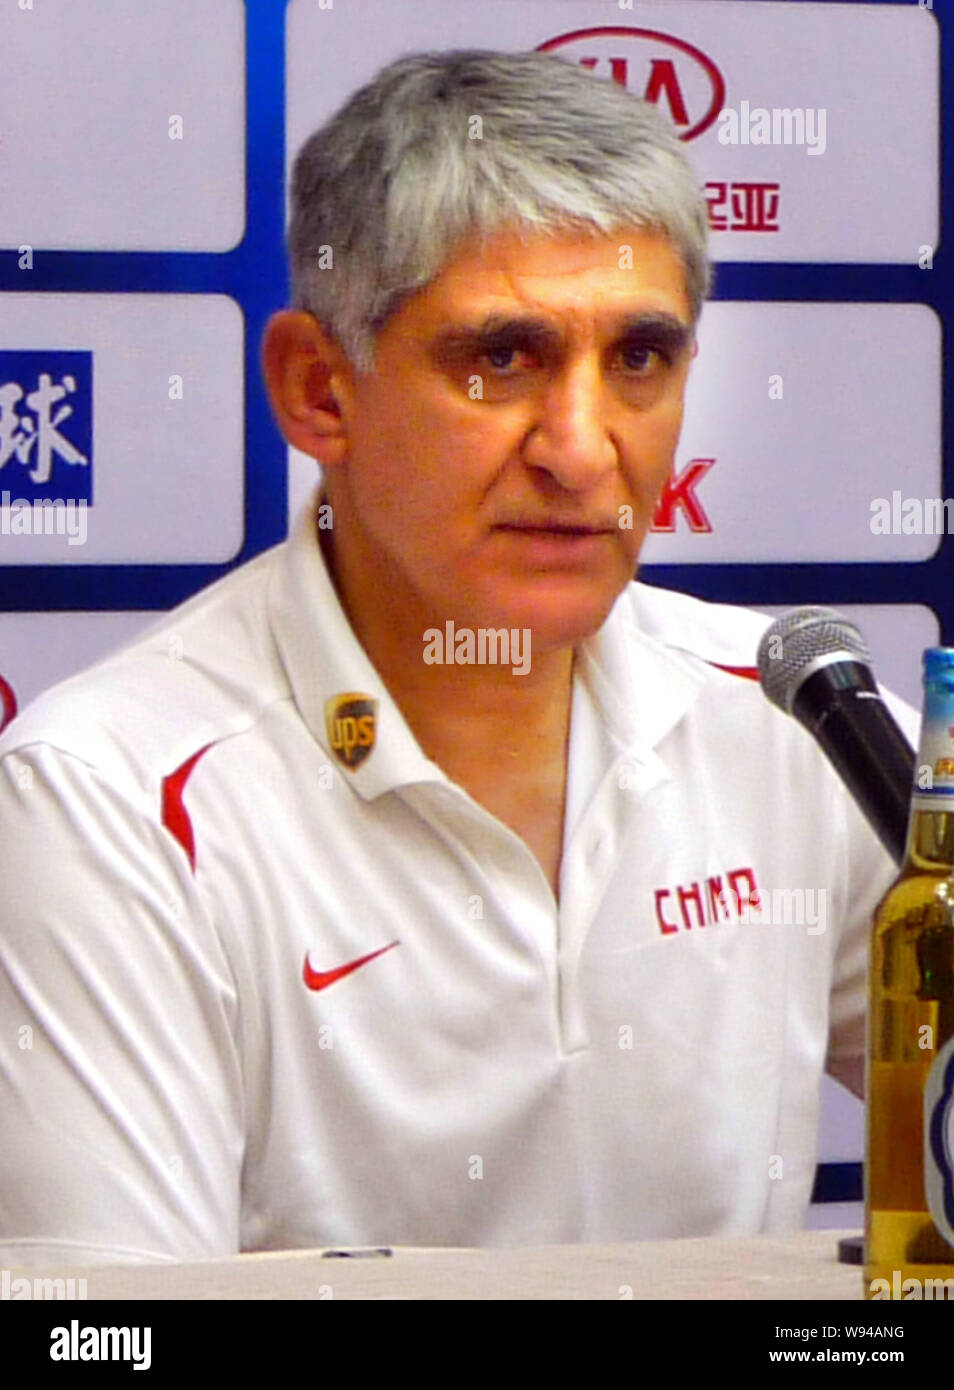 Panagiotis Giannakis,le nouvel entraîneur-chef de l'équipe de basket-ball de Mens de Chine, assiste à une conférence de presse pour la Coupe Continentale en 2013 Stankovic Guangz Banque D'Images